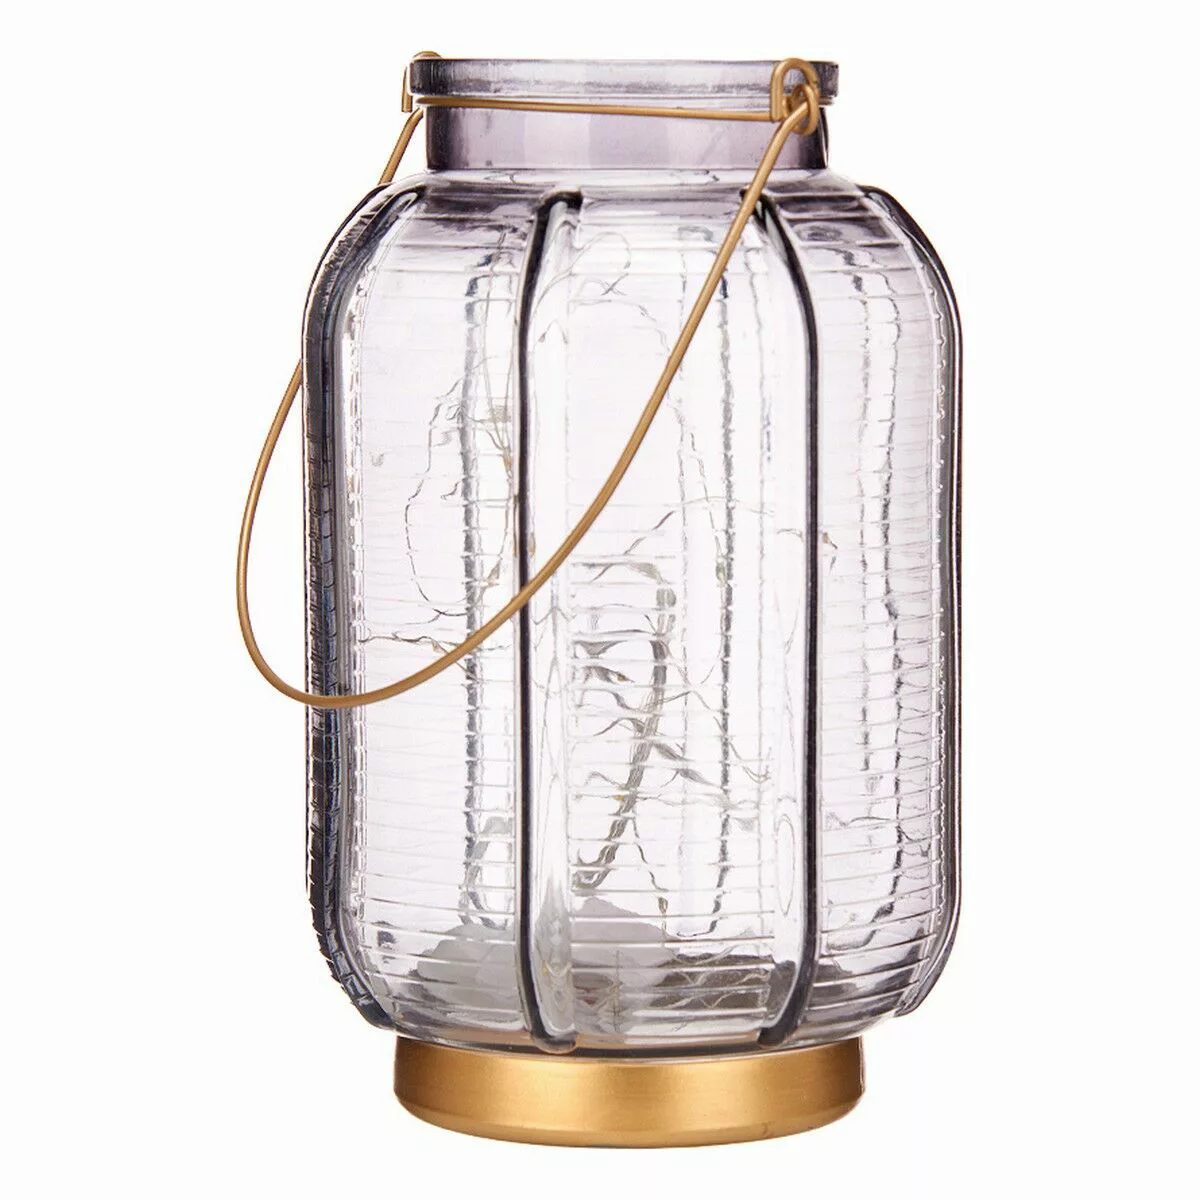 Led-laterne Streifen Grau Golden Glas (13,5 X 22 X 13,5 Cm) günstig online kaufen